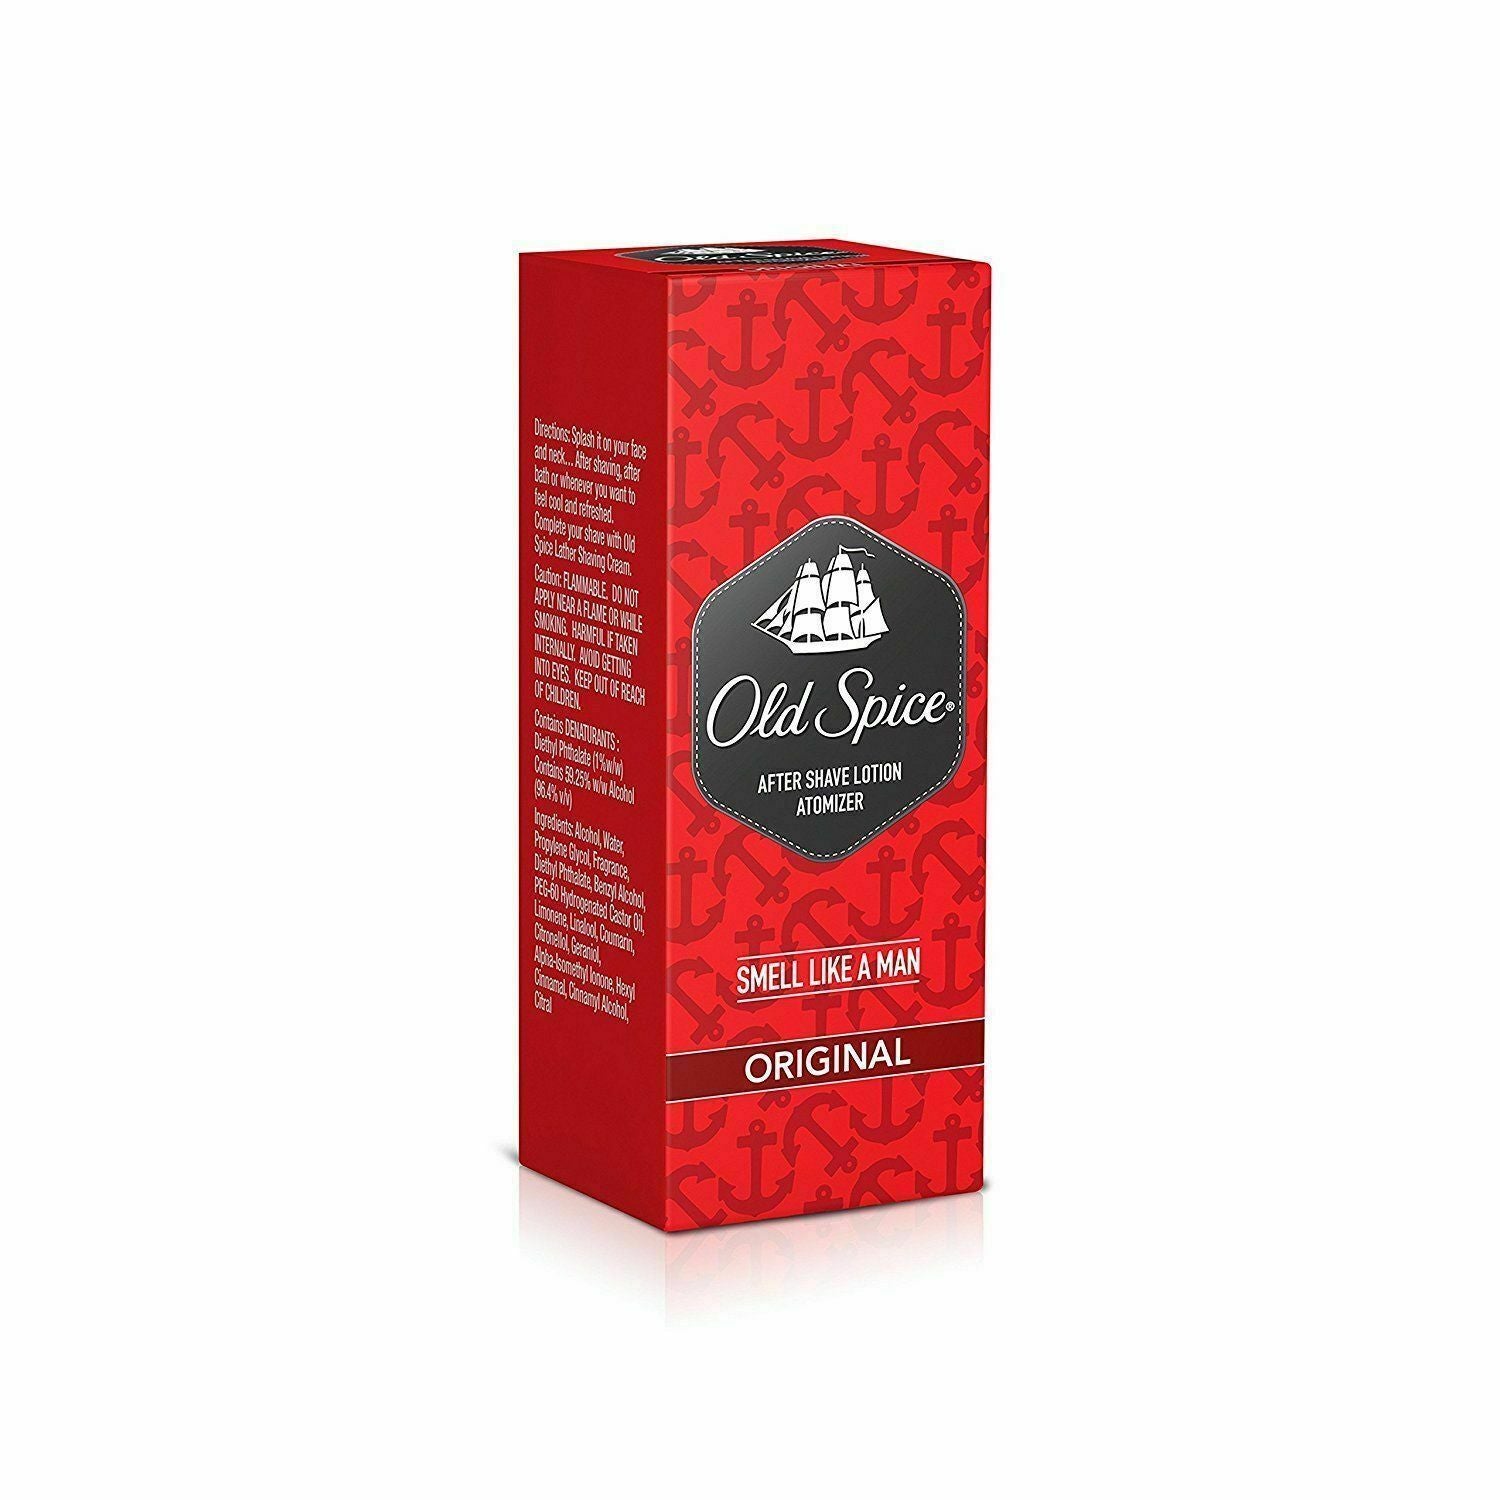 Old Spice After Shave Lotion - ORIGINAL 150 ML For Men - Aftershave